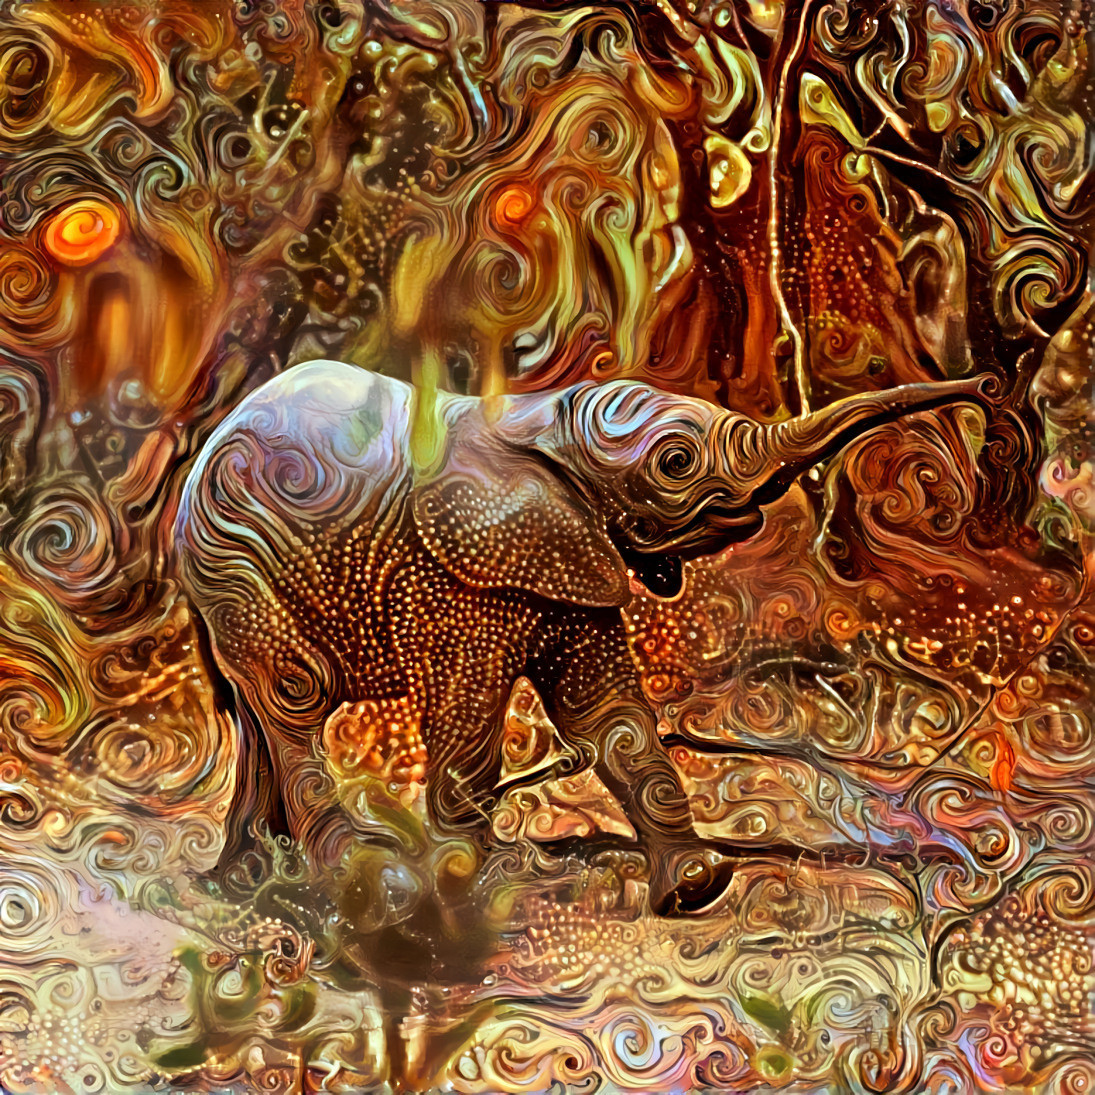 Baby Elephant  [1.2MP]